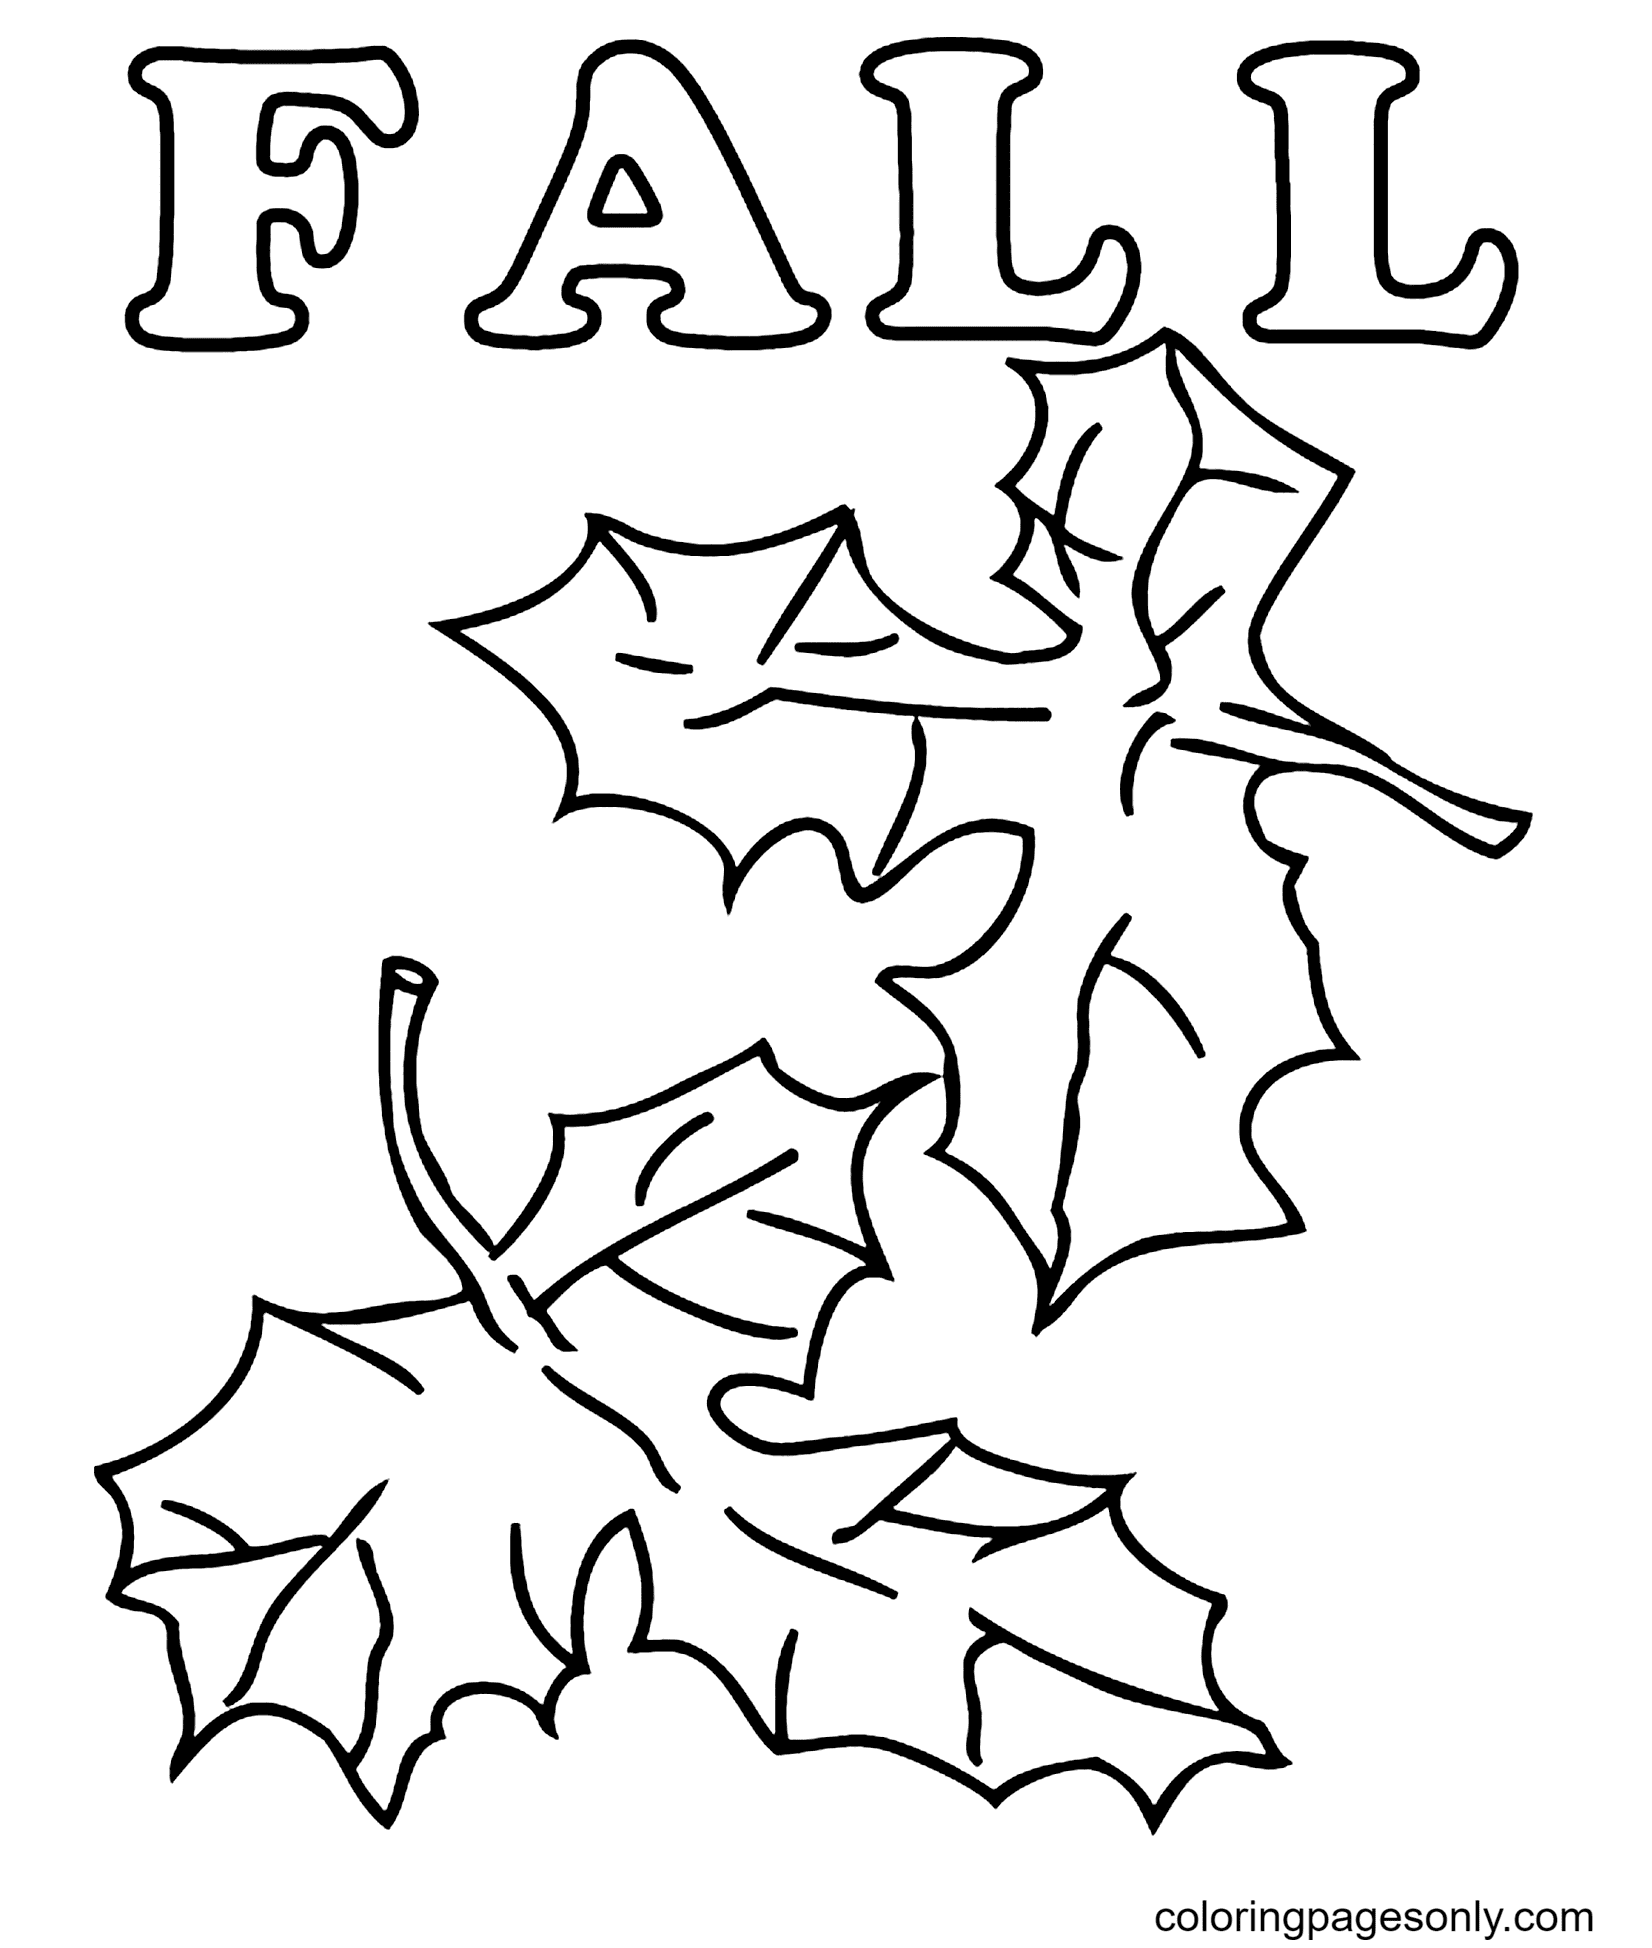 Folhas de outono para impressão gratuita em Folhas de outono